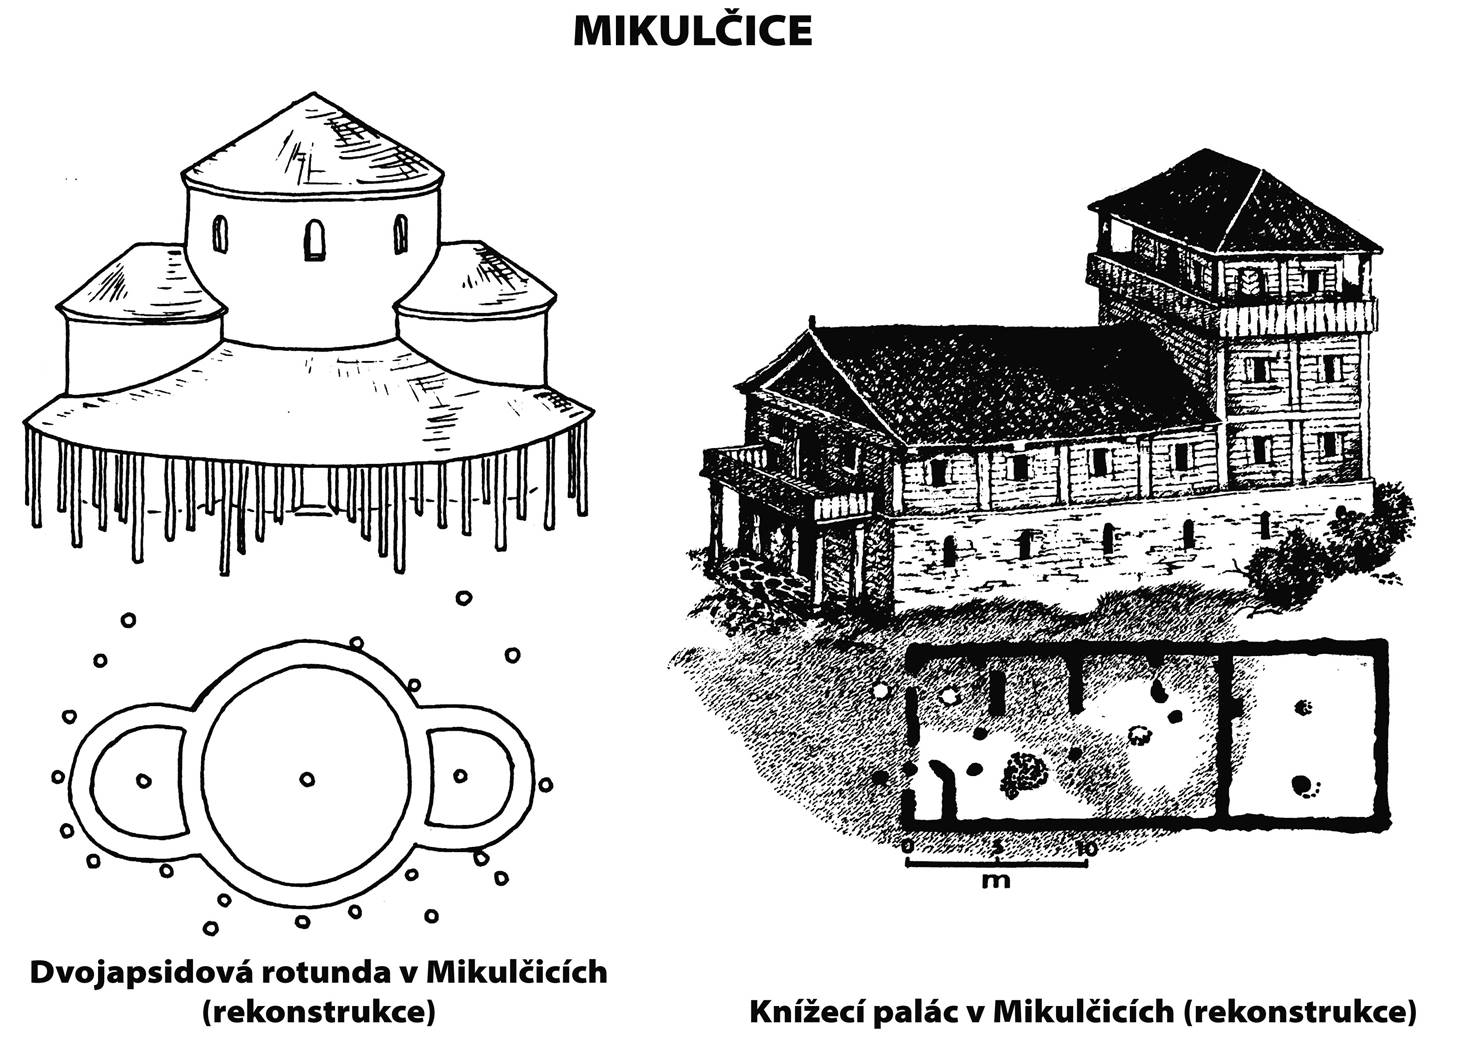 11. Mikulčice: dvojapsidová rotunda a knížecí palác